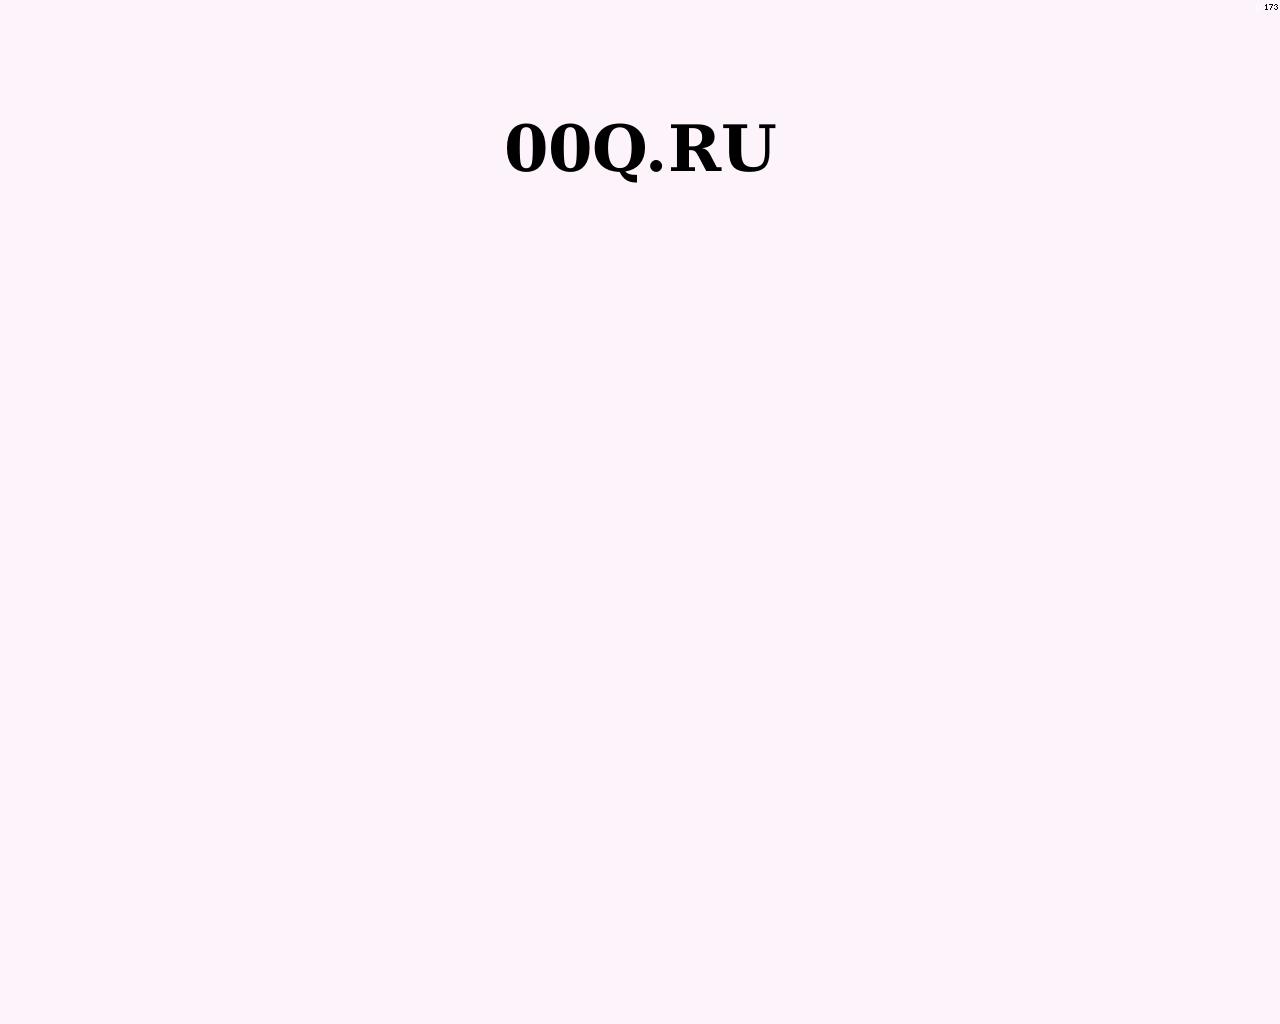 Изображение сайта 00q.ru в разрешении 1280x1024